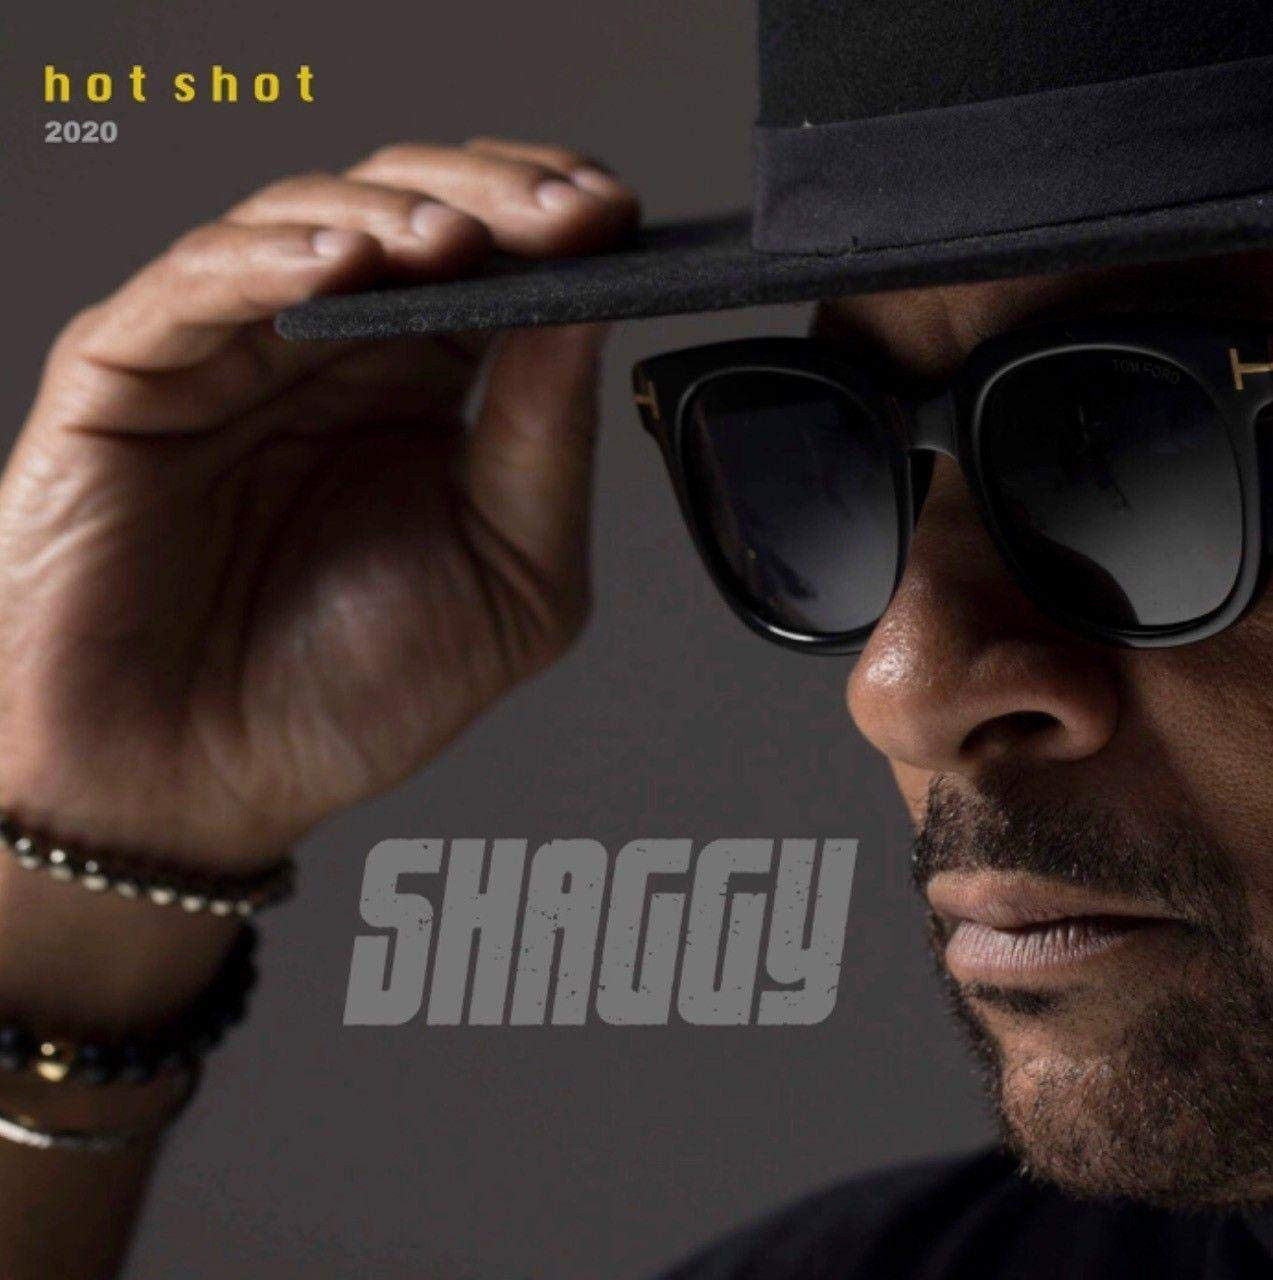 Hot Shot 2020 - Shaggy